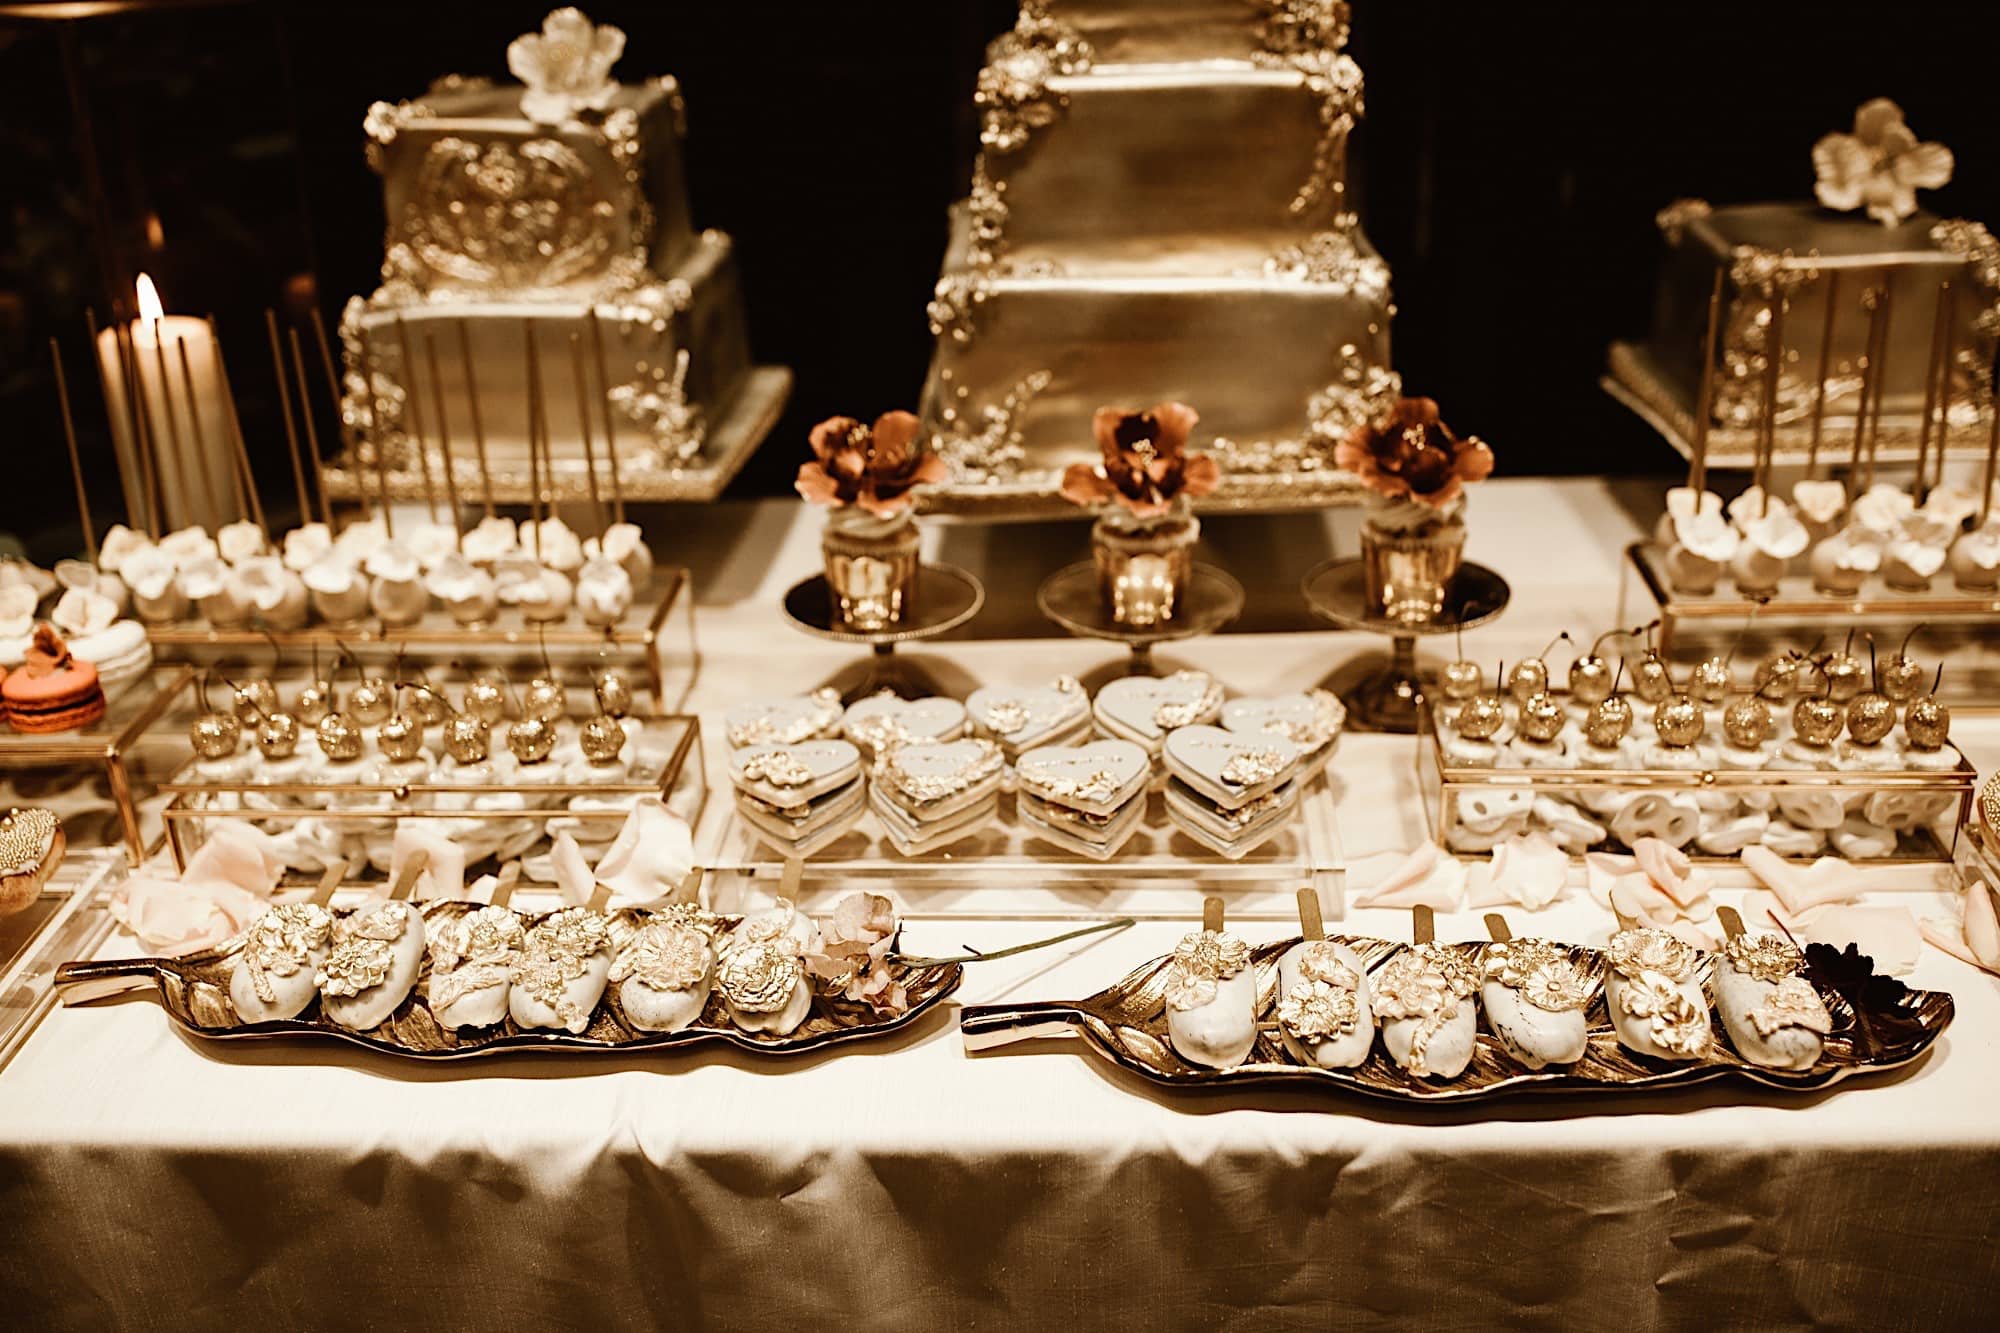 Vineyard Wedding desserts